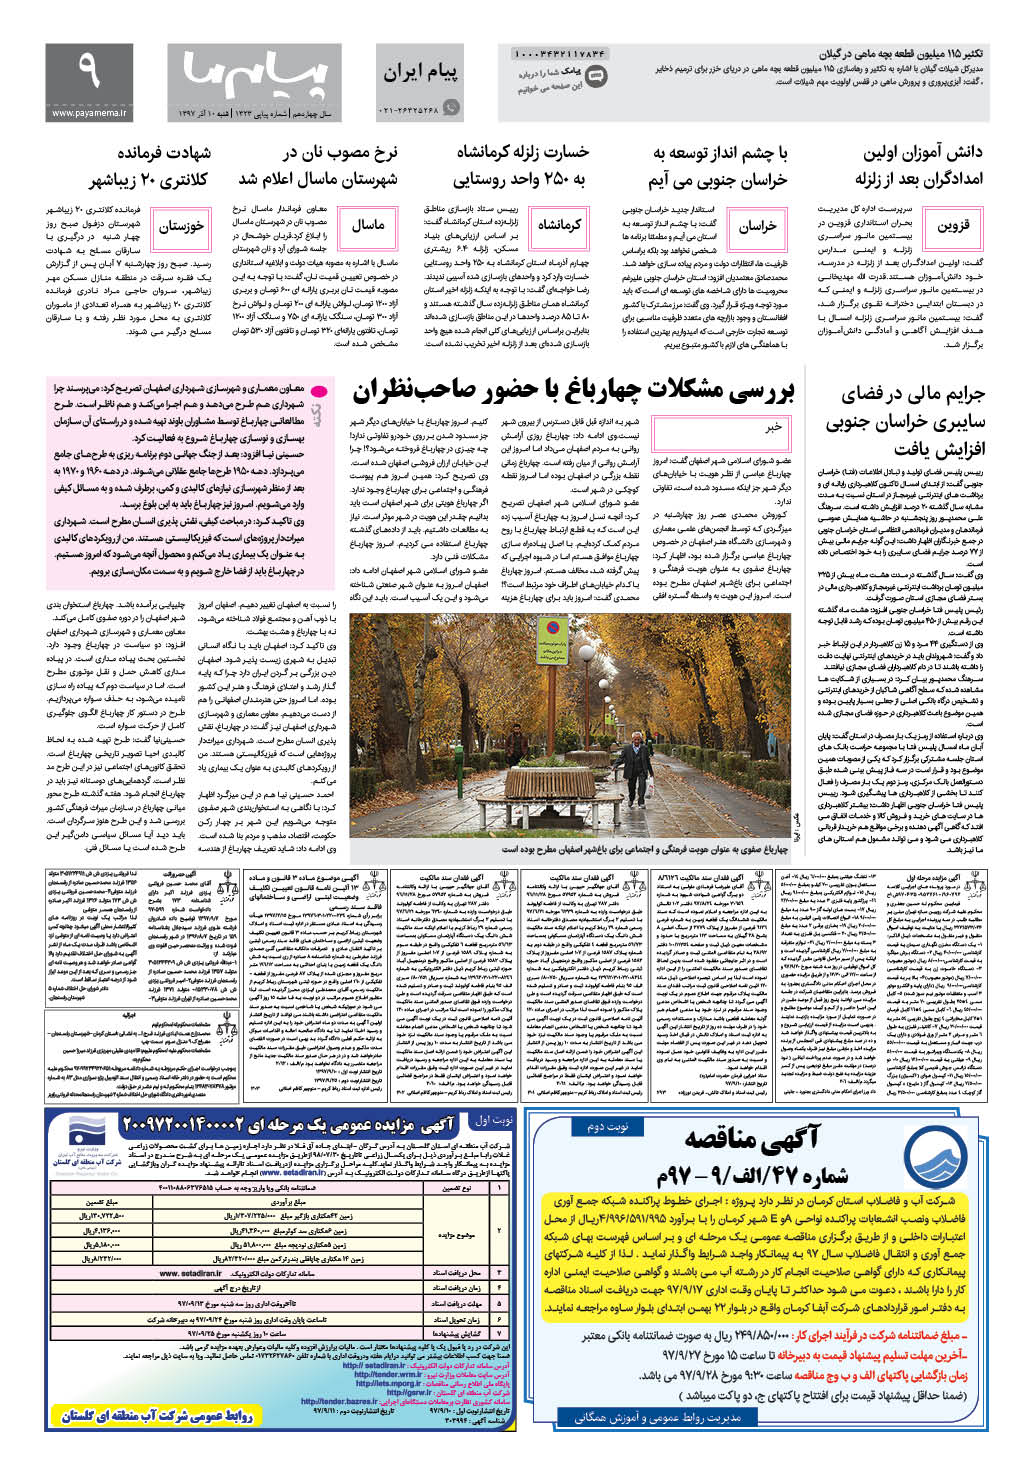 صفحه پیام ایران شماره 1323 روزنامه پیام ما